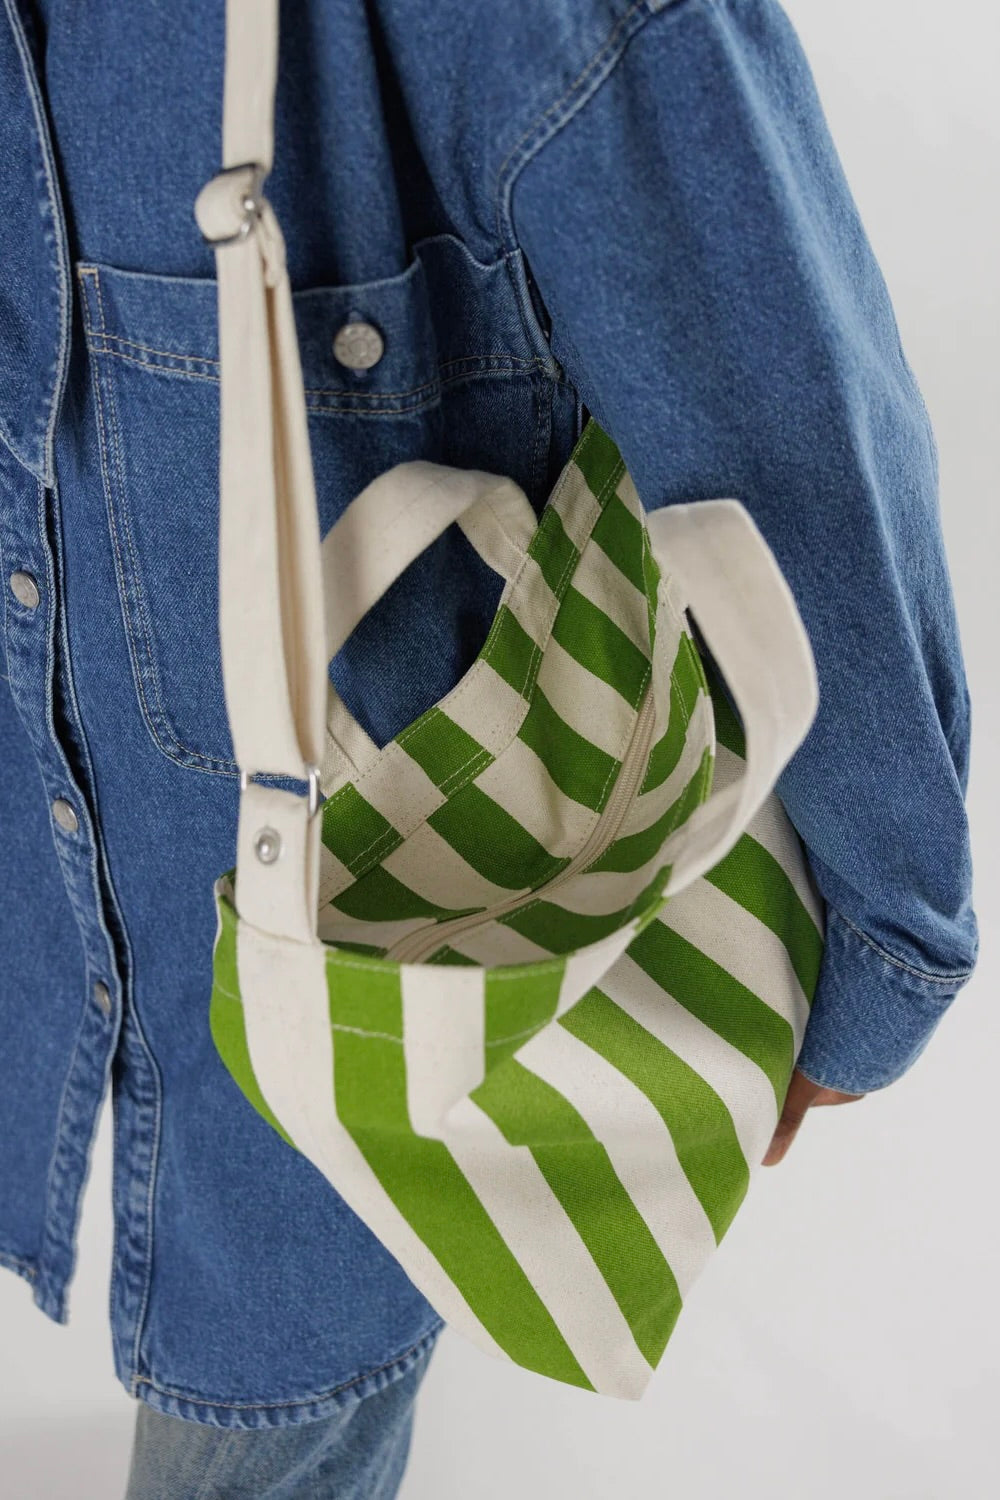 Baggu Horizontal Zip Duck Bag / Green Awning Stripe